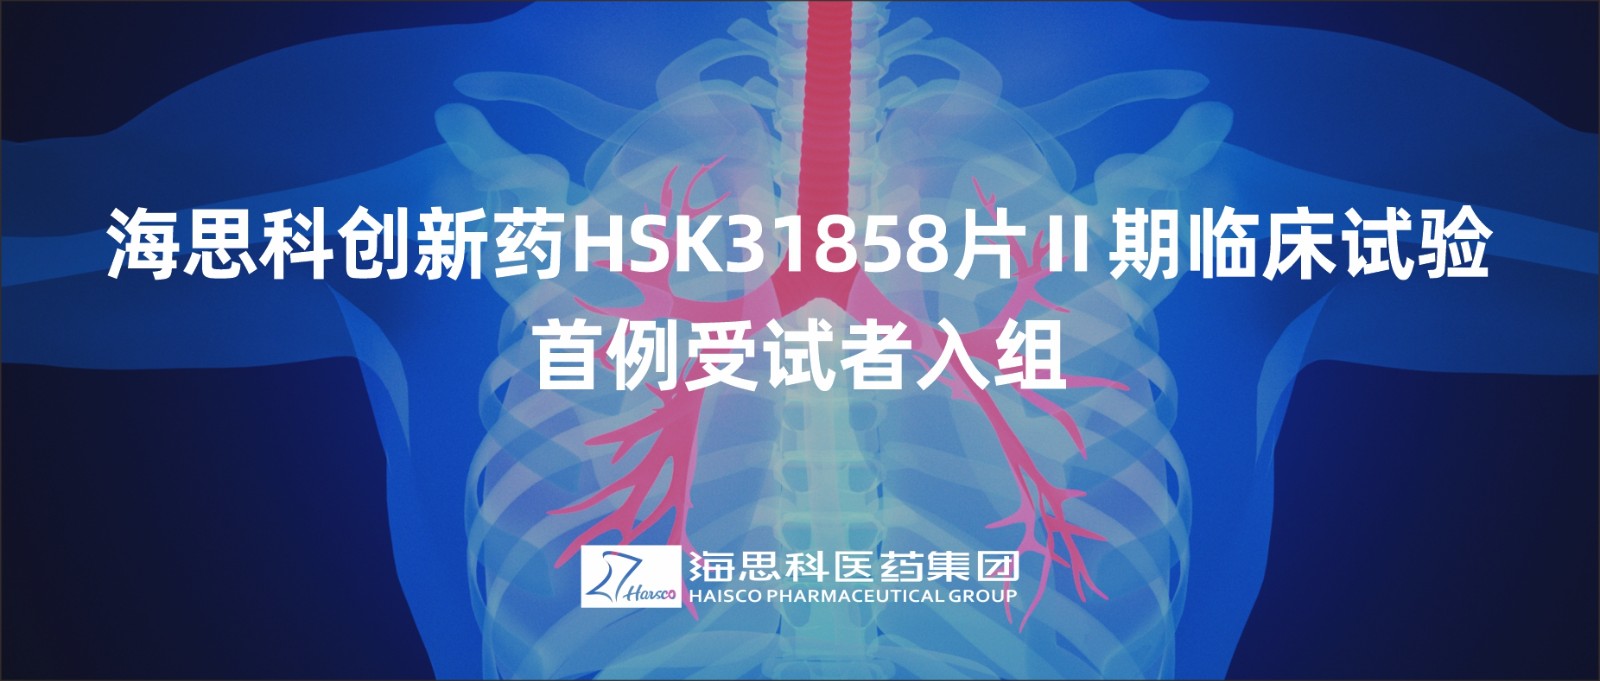 云顶国际官网创新药HSK31858片Ⅱ期临床试验首例受试者入组